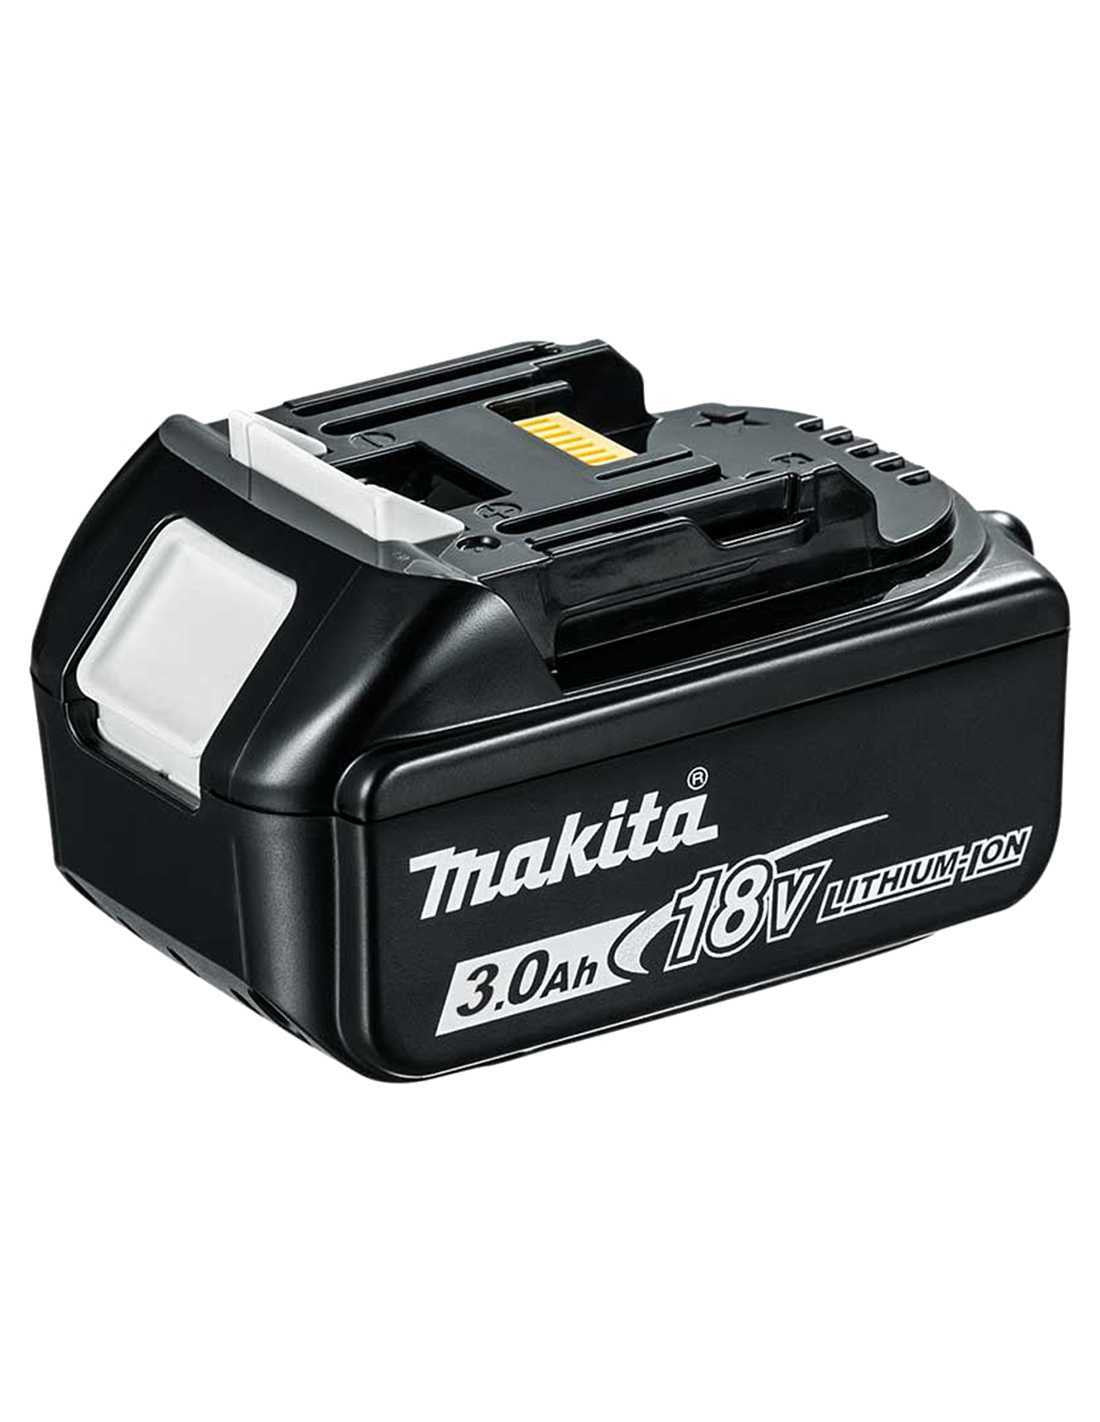 Makita-Set mit 9 Werkzeugen + 3 5,0-Ah-Akkus + Ladegerät + 2 Taschen DLX9243BL3